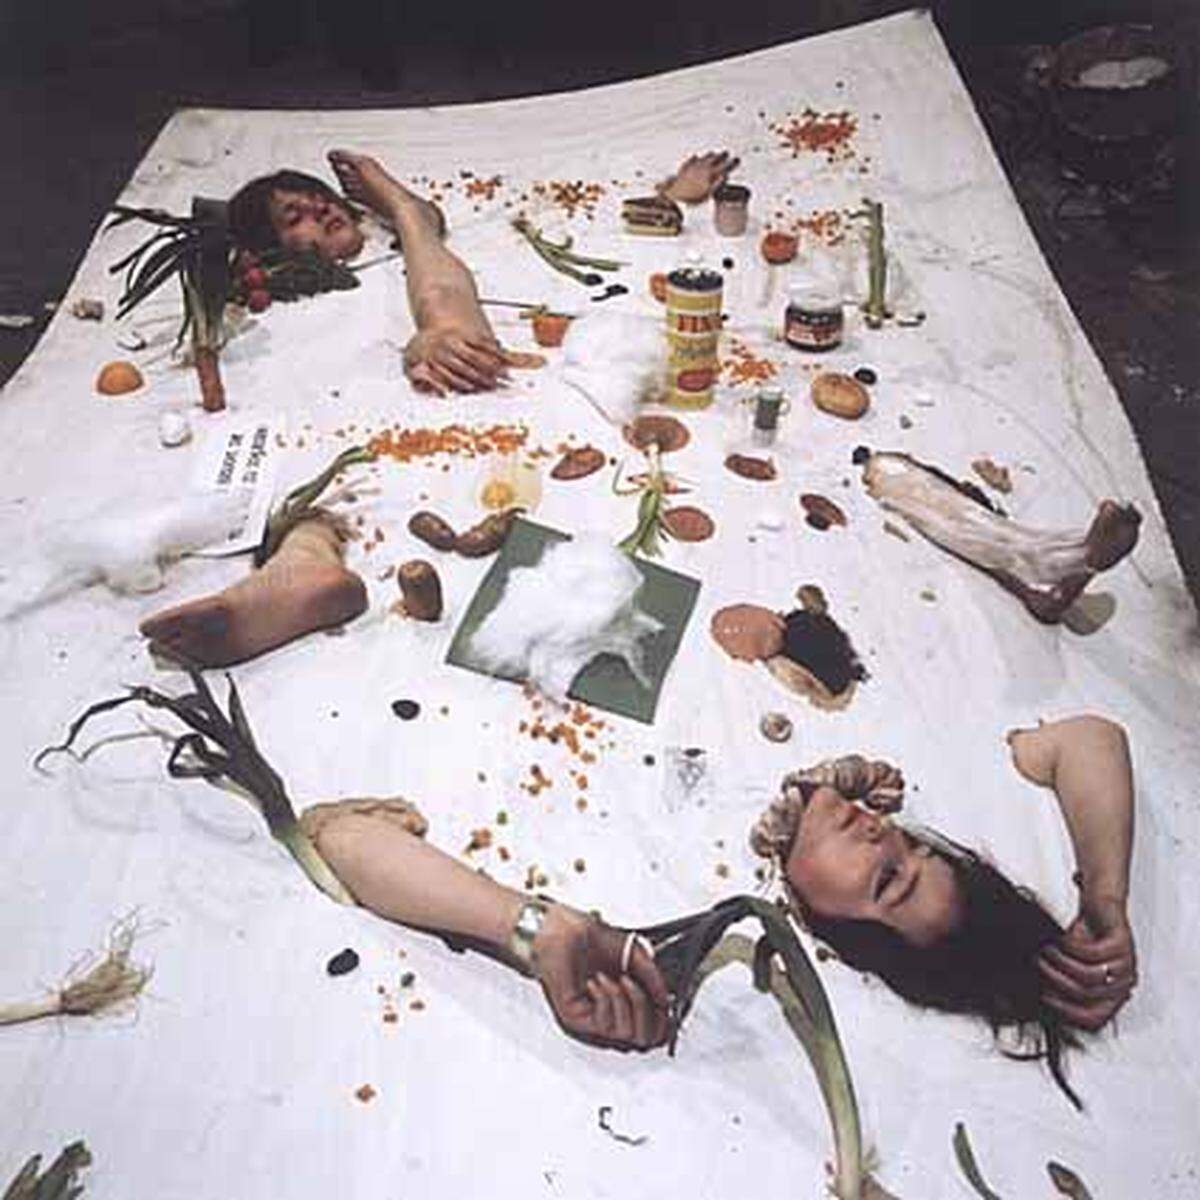 Die von Otto Muehl im "Nahrungsmitteltest" verwüsteten nackten Körper, dazwsichengestreutes Gemüse und andere Lebensmittel machen das Stillleben perfekt.Im Bild: Otto Muehl, Materialaktion Nr. 30, Nahrungsmitteltest, 1966